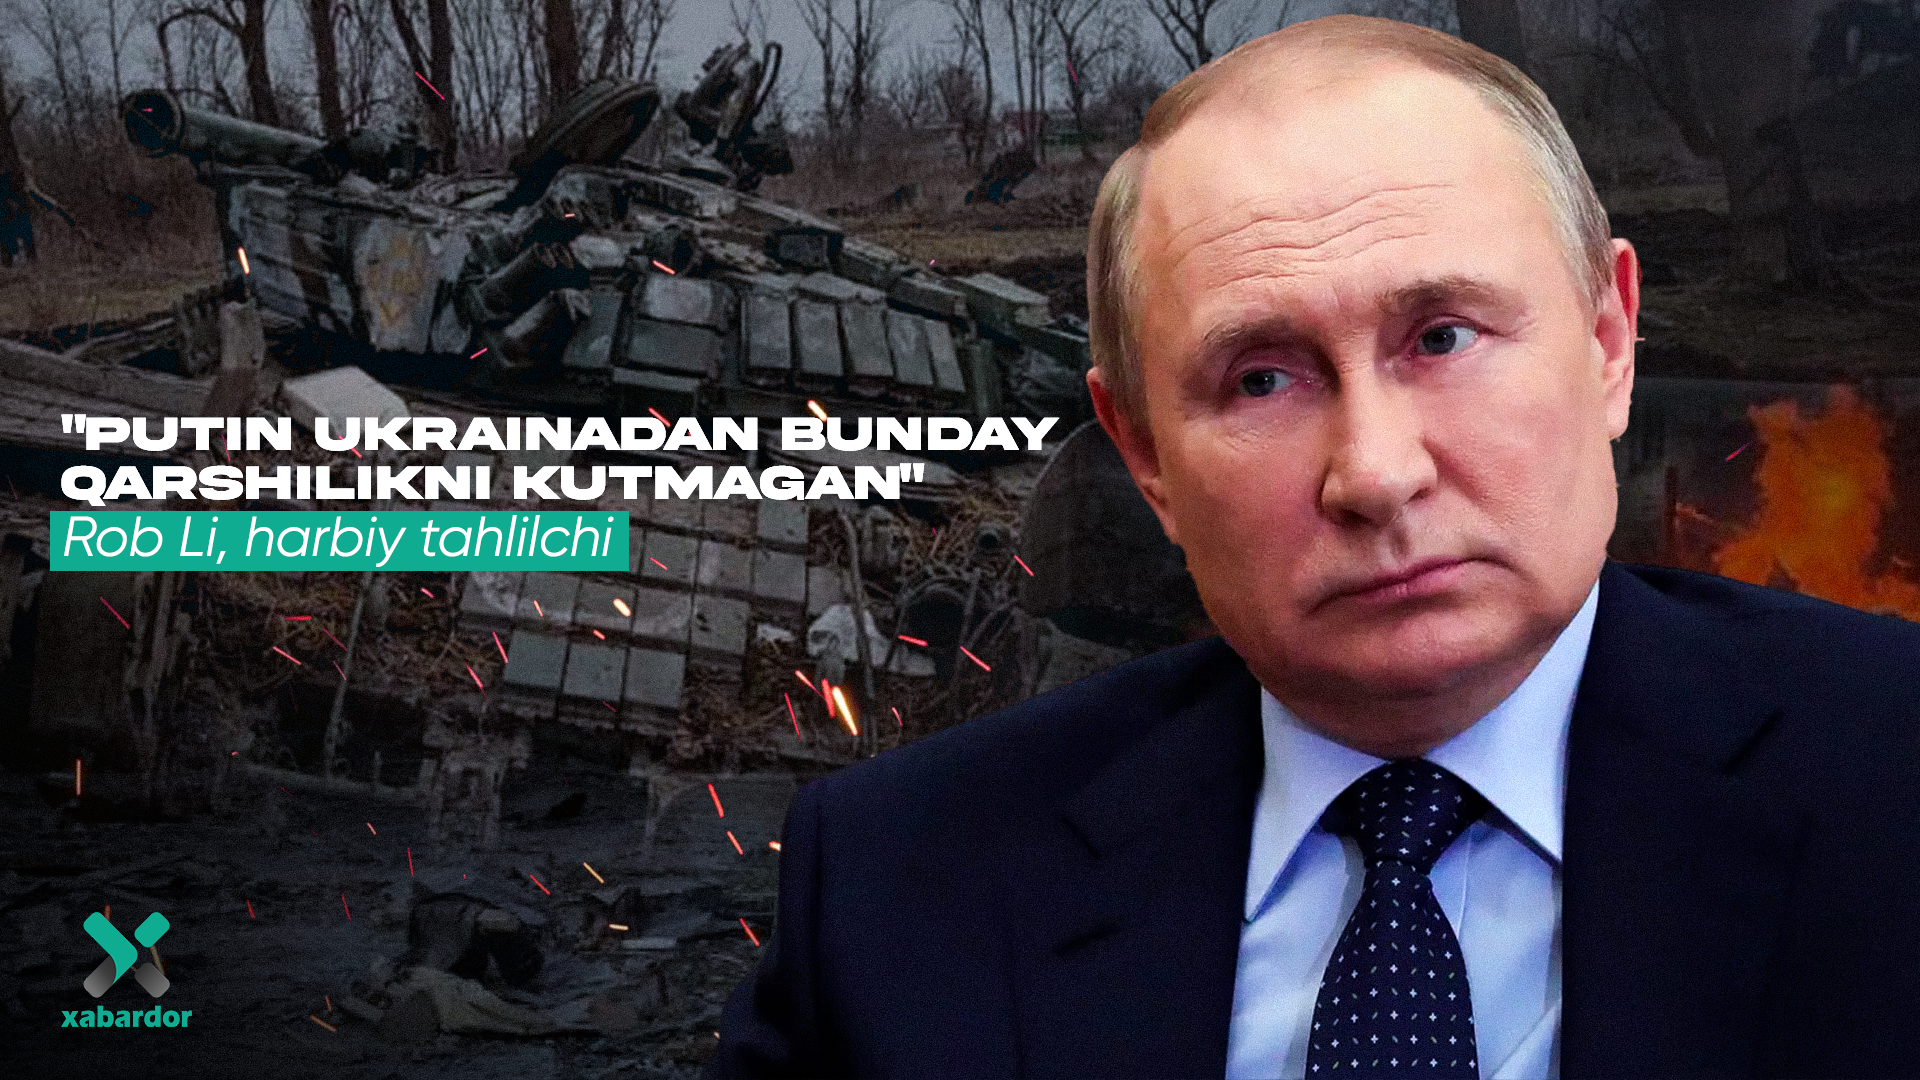 
											
											“Putin Ukrainadan bunday qarshilikni kutmagan” – Rob Li, harbiy tahlilchi
											
											